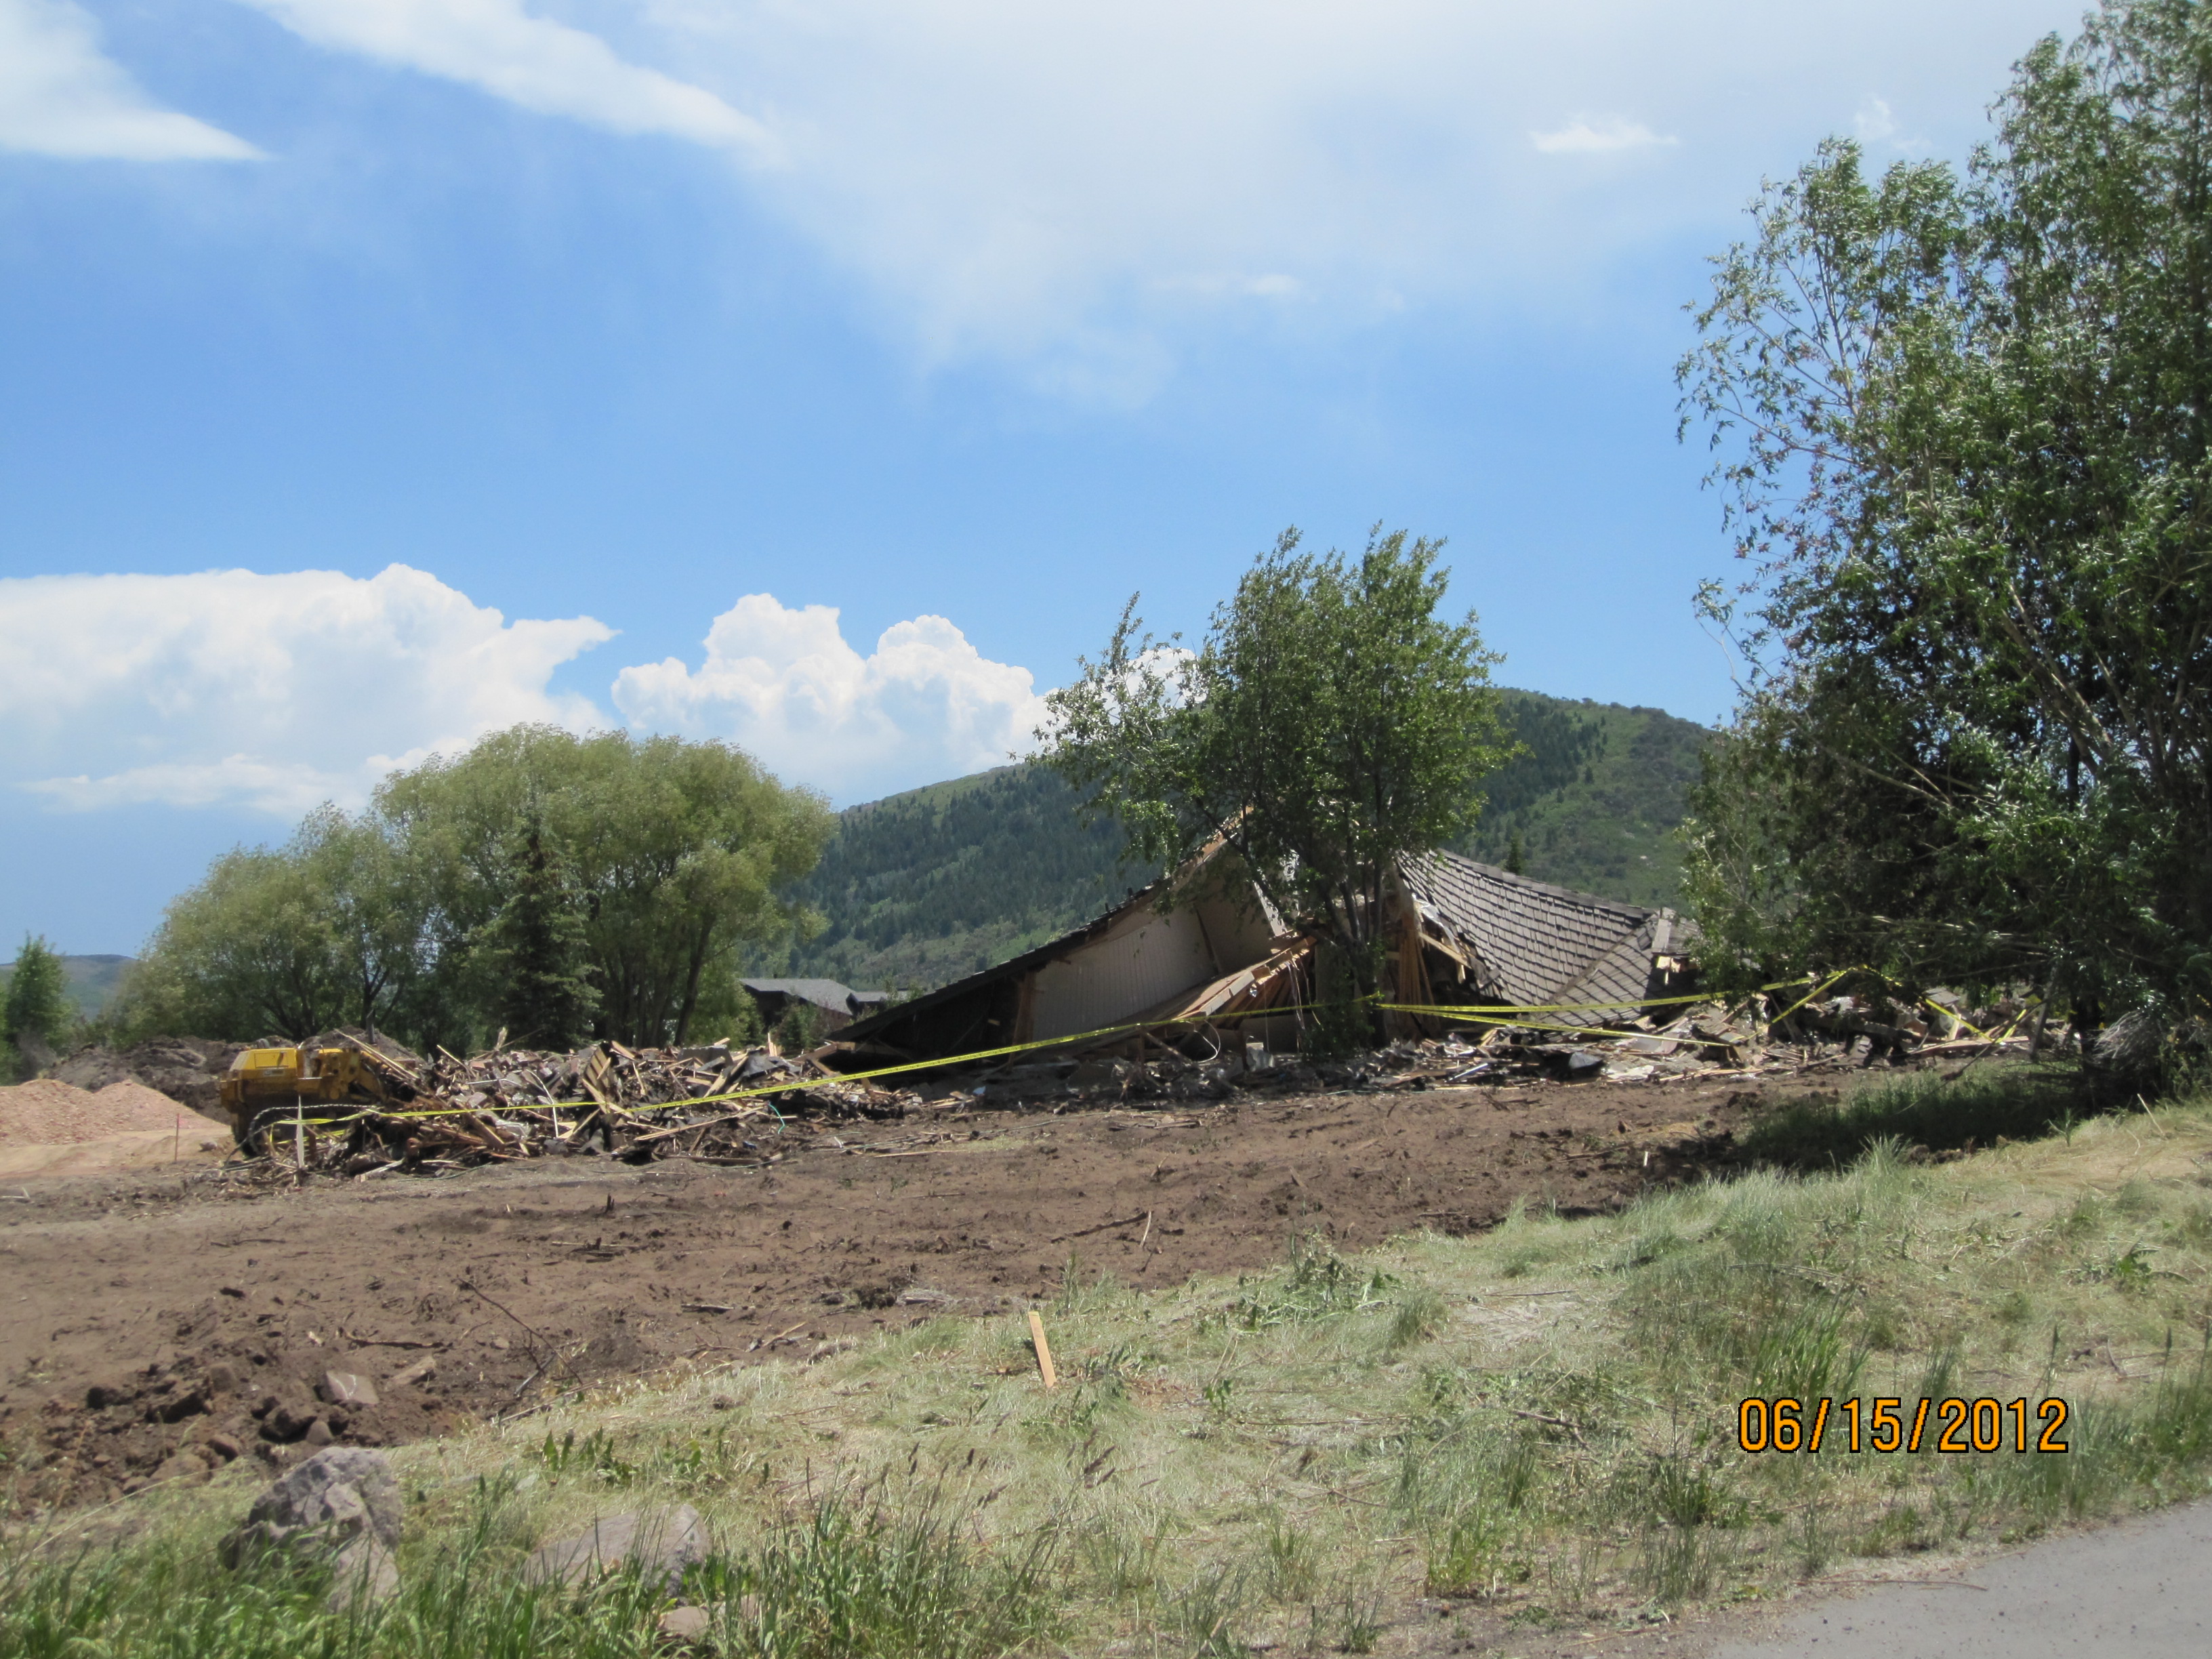 2012 destruction of property at 4280 Highway 224